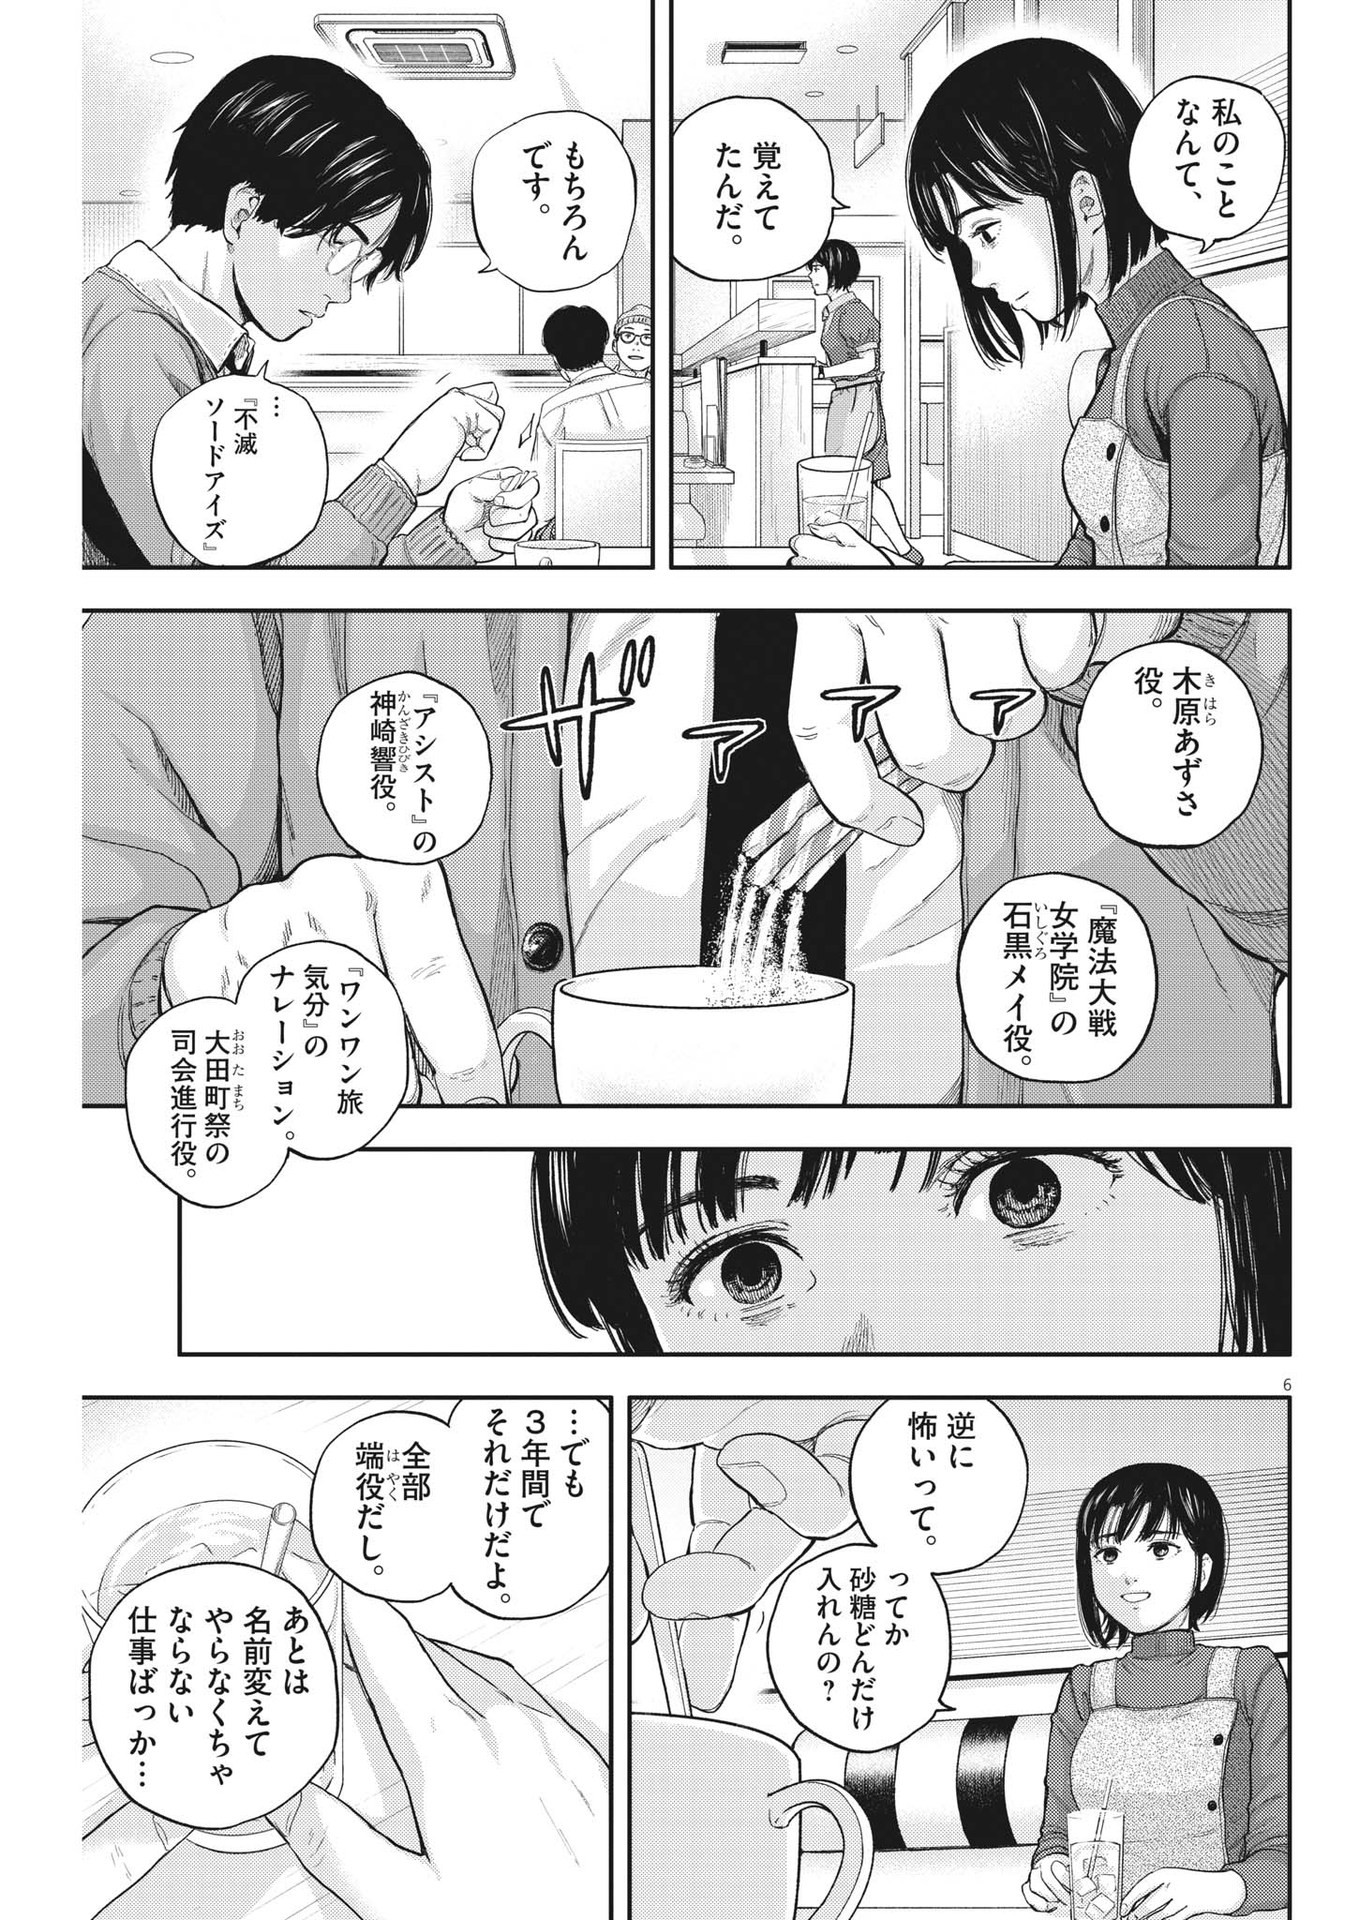 Yumenashi-sensei no Shinroshidou - Chapter 2 - Page 6